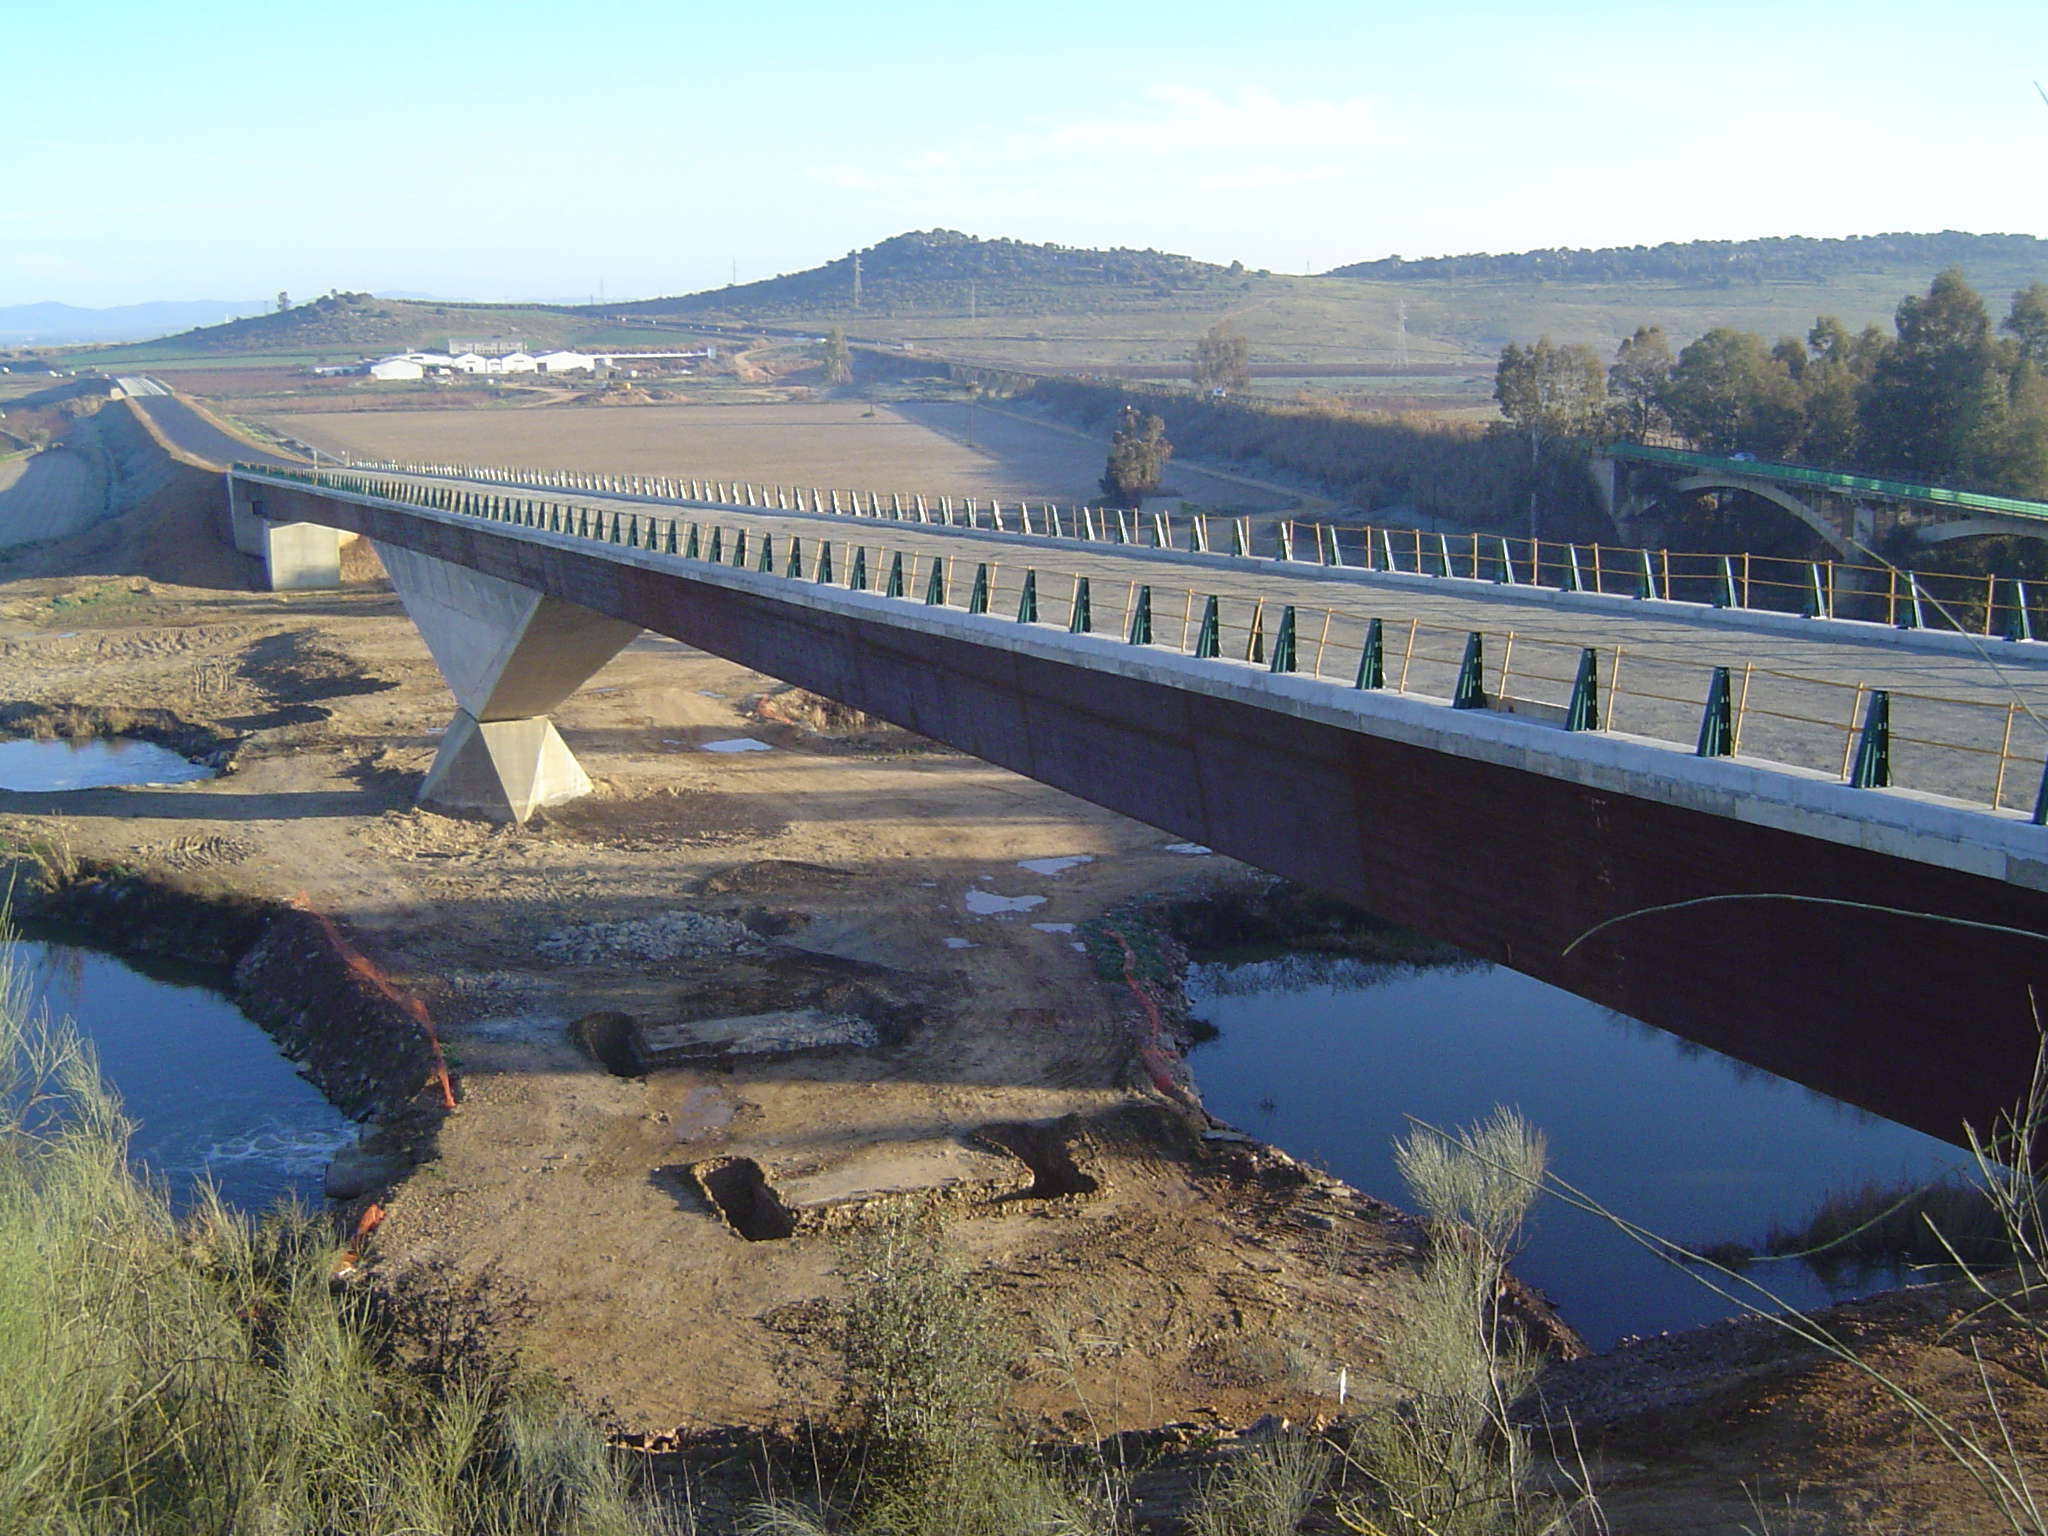 Bridge over river "Guadiana"